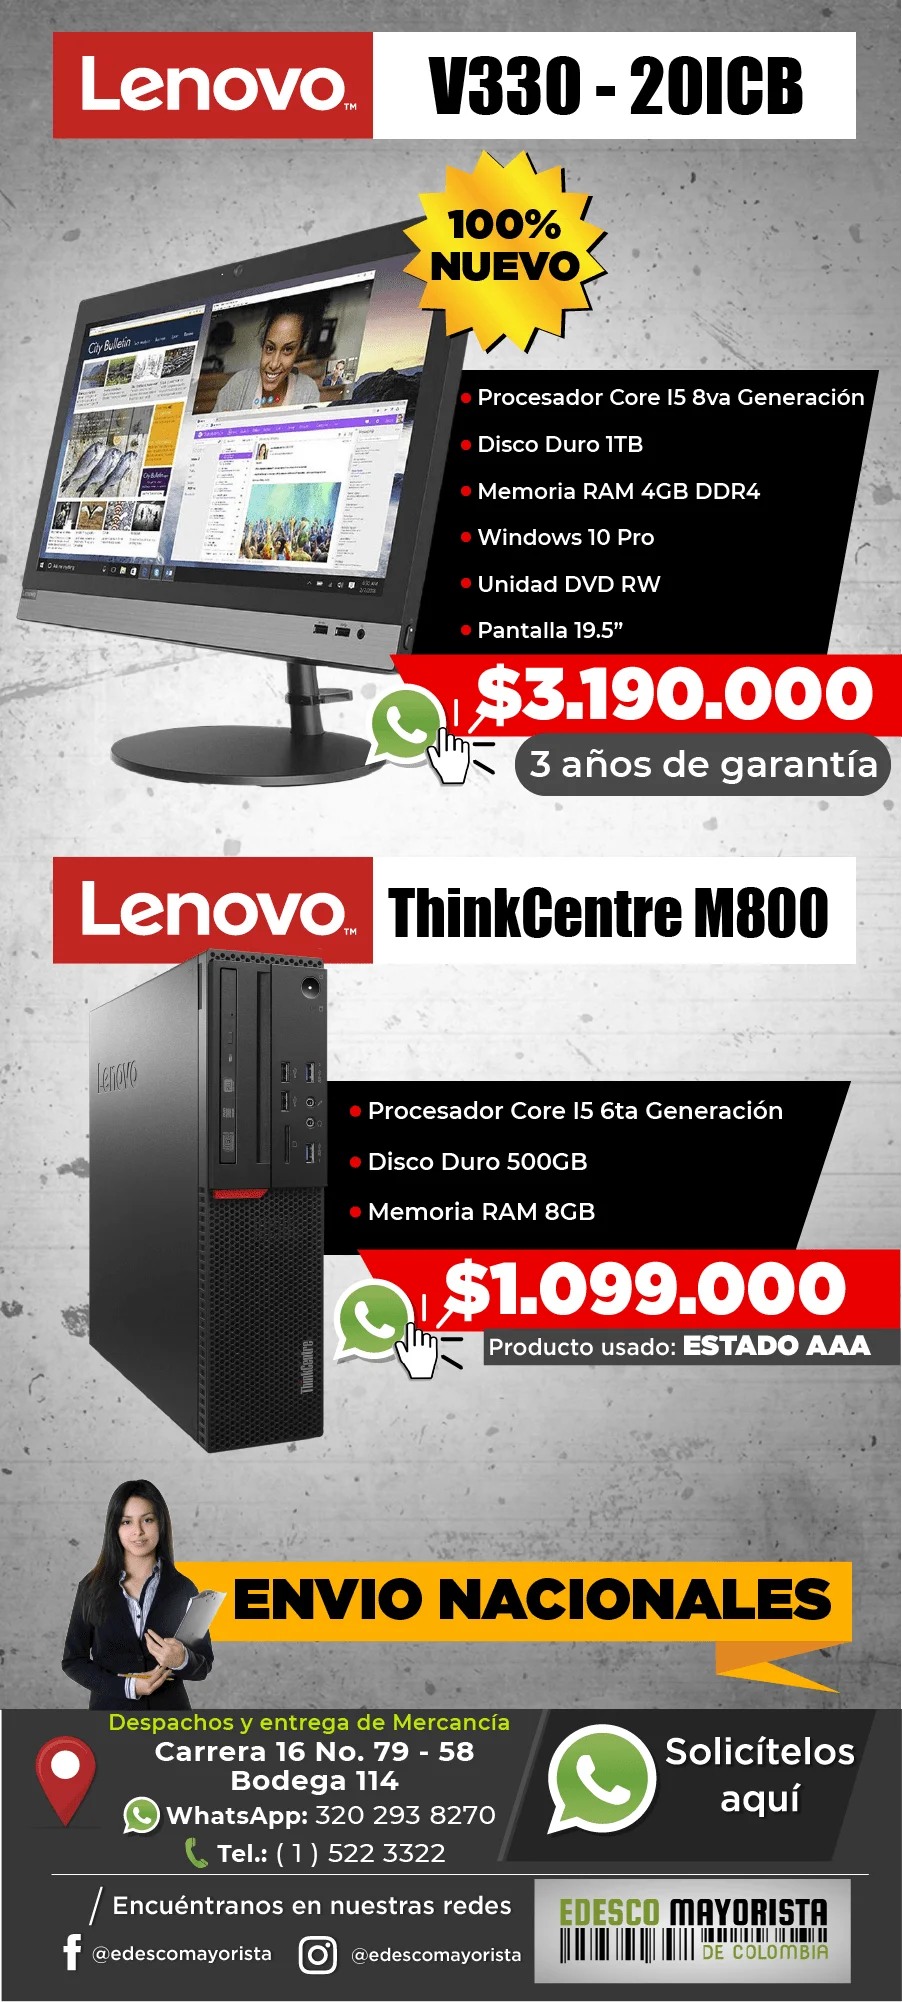 Lenovo V330 AIO - ThinkCentre M800